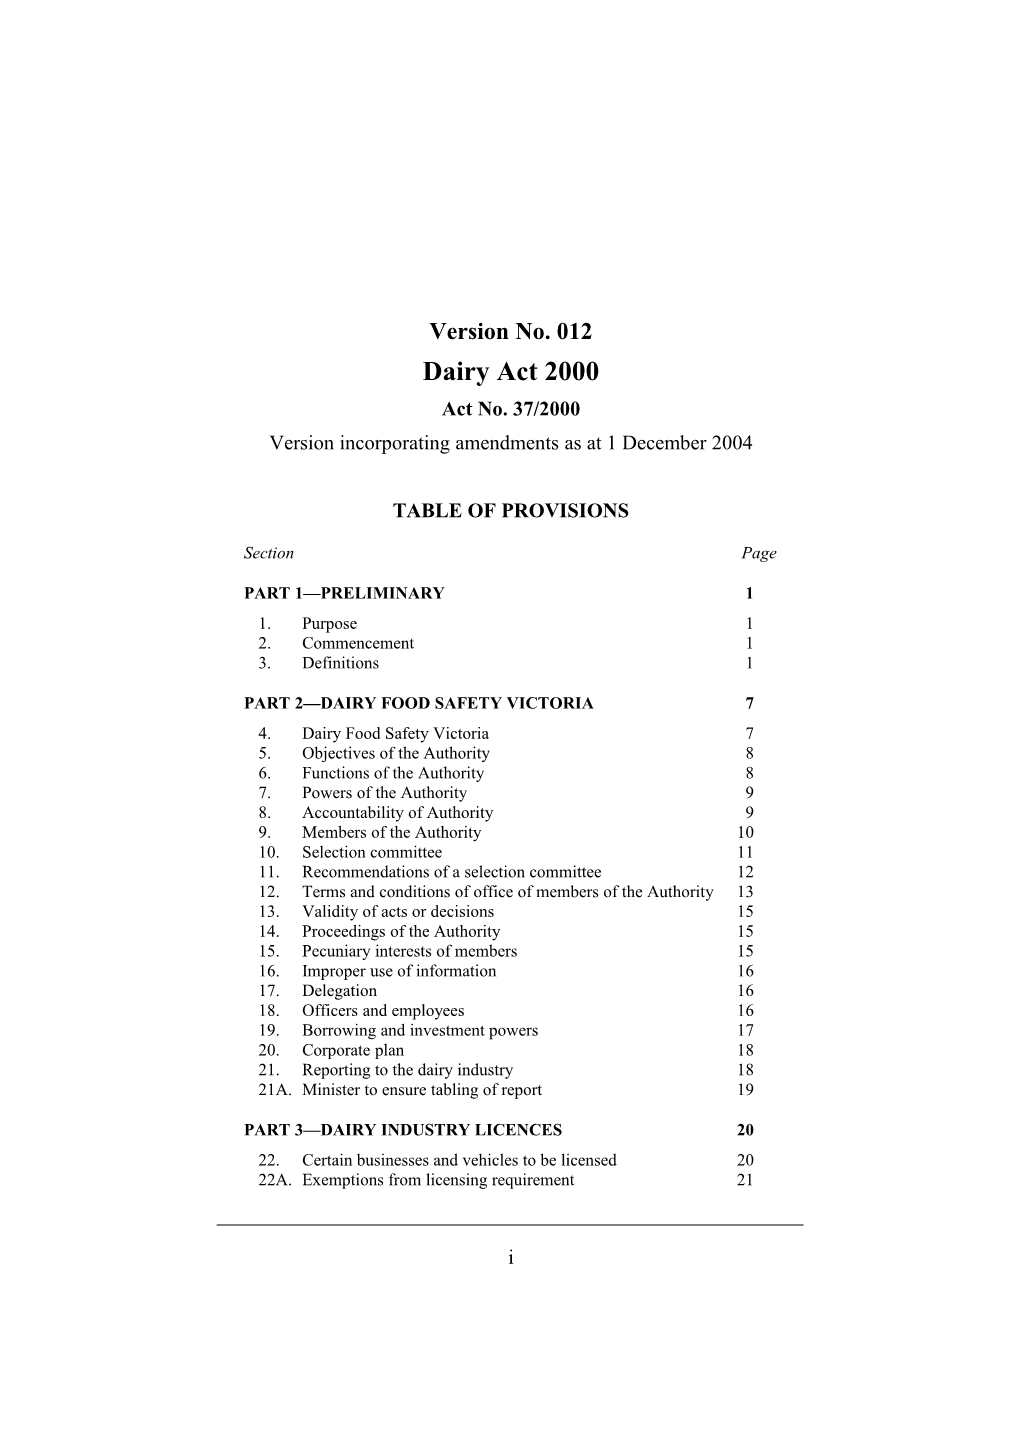 Version Incorporating Amendments As at 1 December 2004